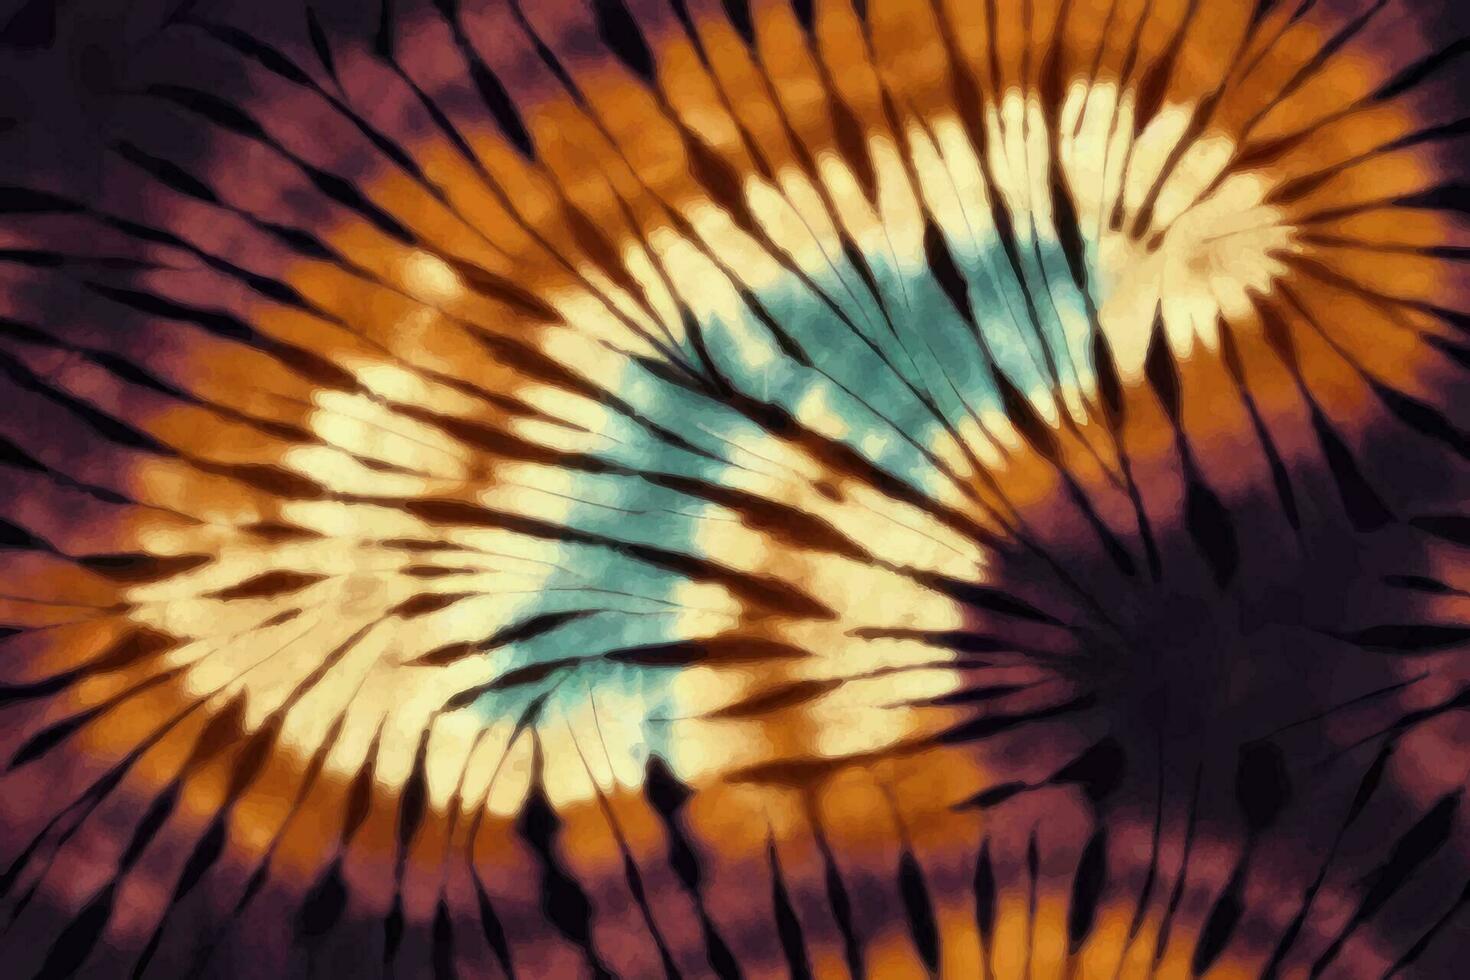 Shibori tye sterben abstrakt Krawatte Farbstoff Farbe Bürste Batik Tinte Strudel Spiral- Stoff botanisch retro Kreis Design geometrisch wiederholen Zeichnung Fliese Vektor Grün braun dunkel Blau Farben , braun See